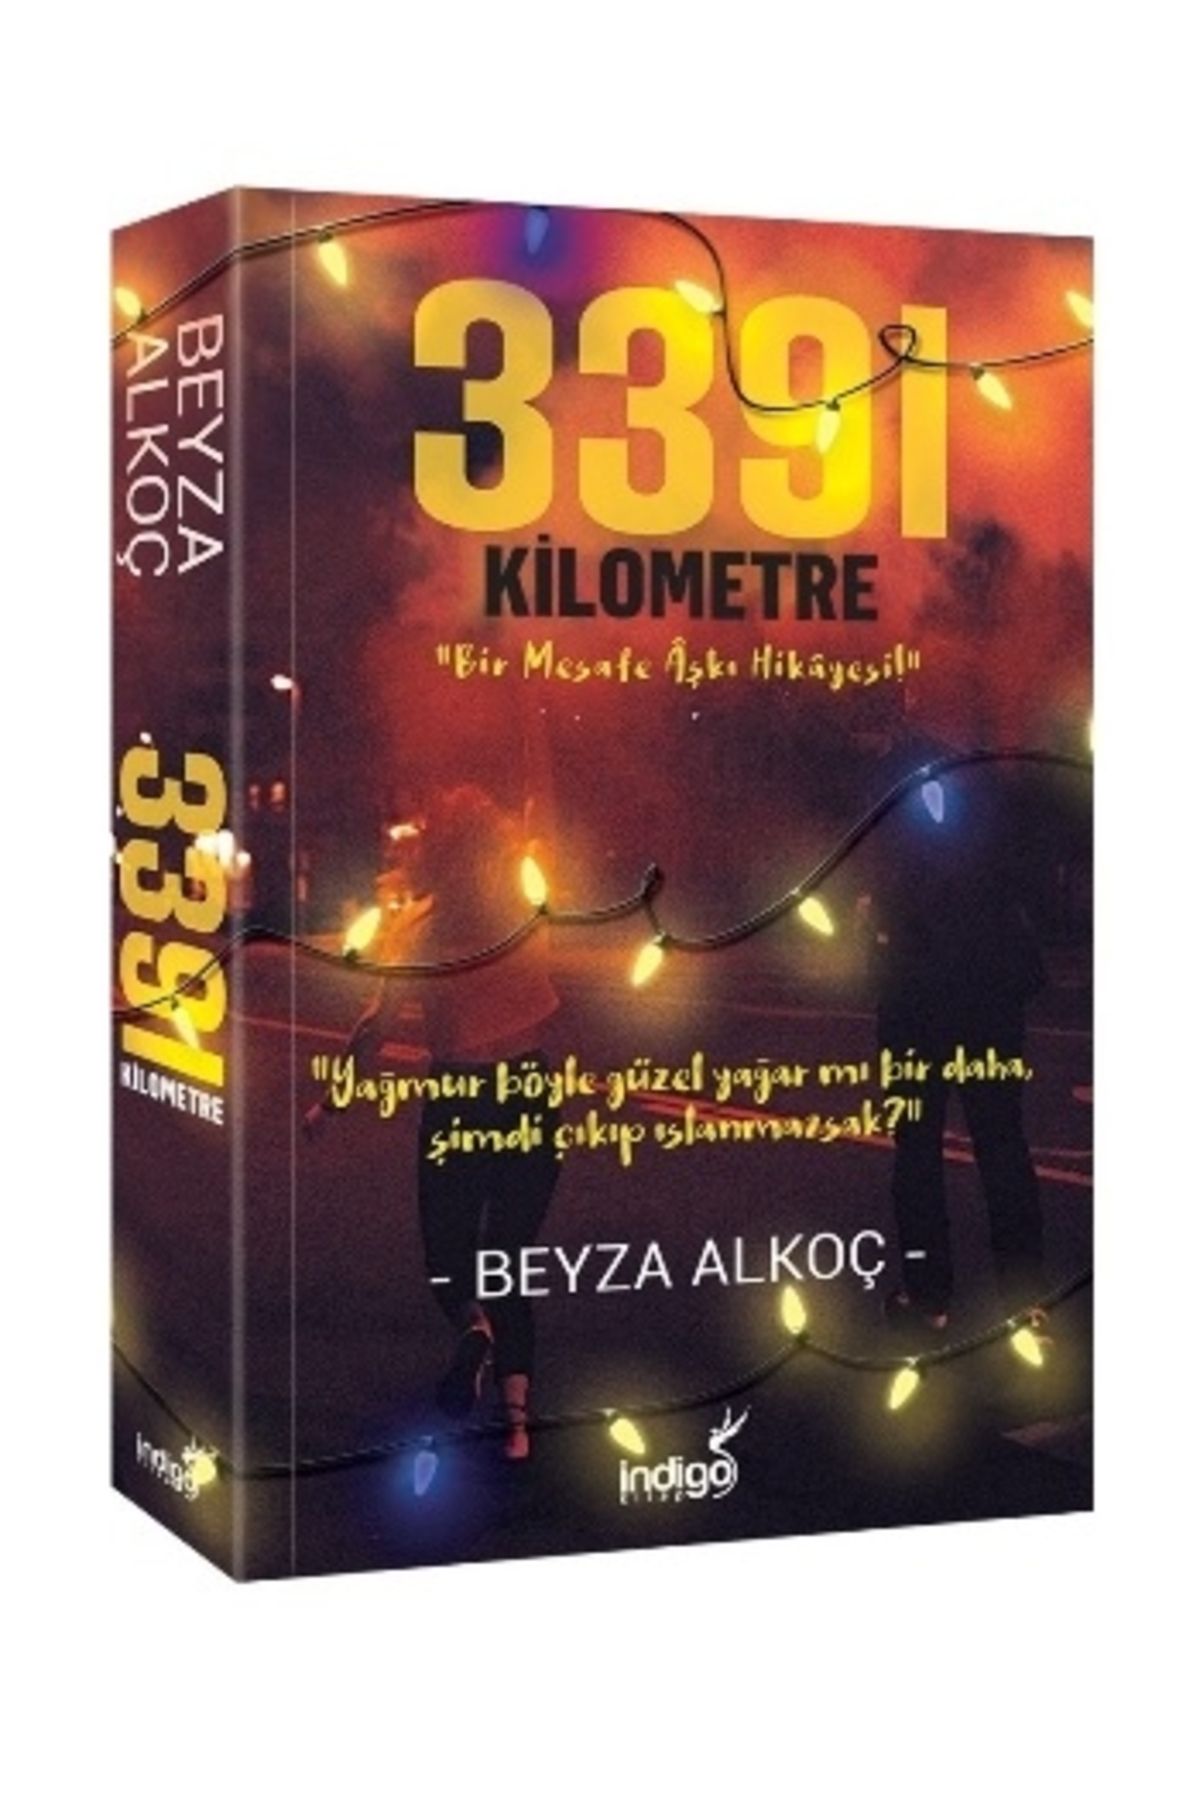 İndigo Kitap 3391 Kilometre - Ciltli